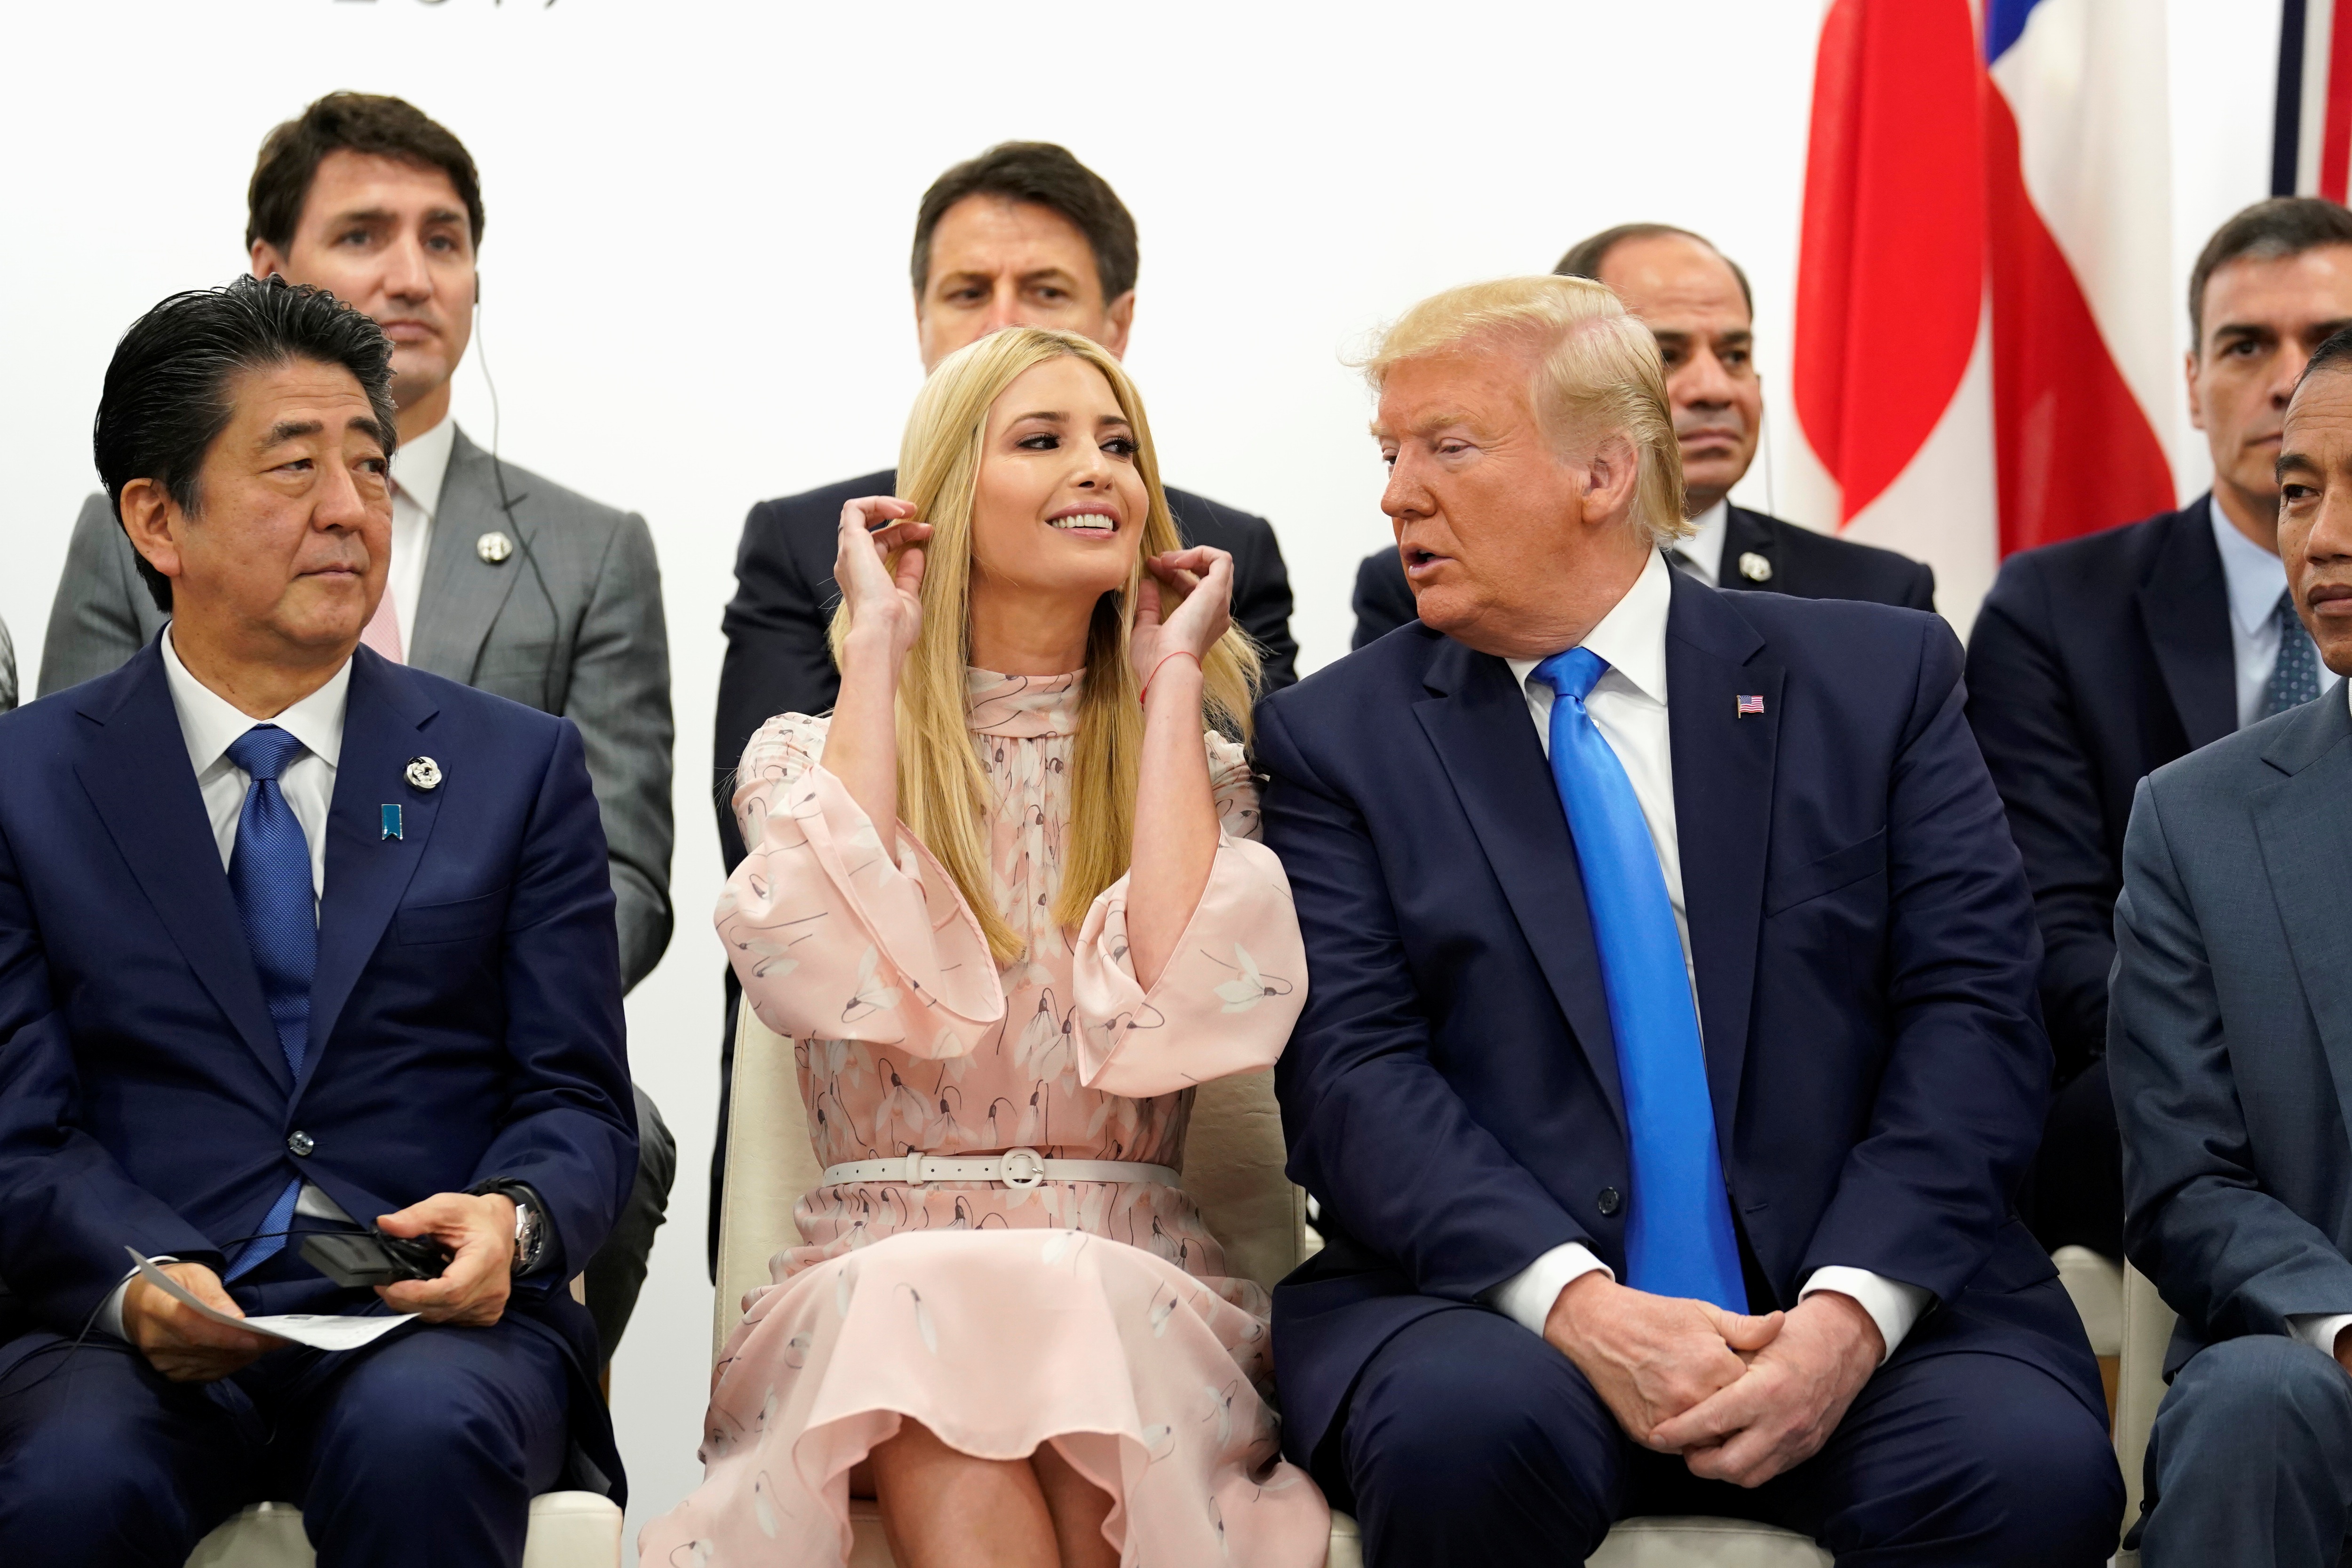 Ông Trump hứng chỉ trích vì để con gái thể hiện “quá đà” tại G20